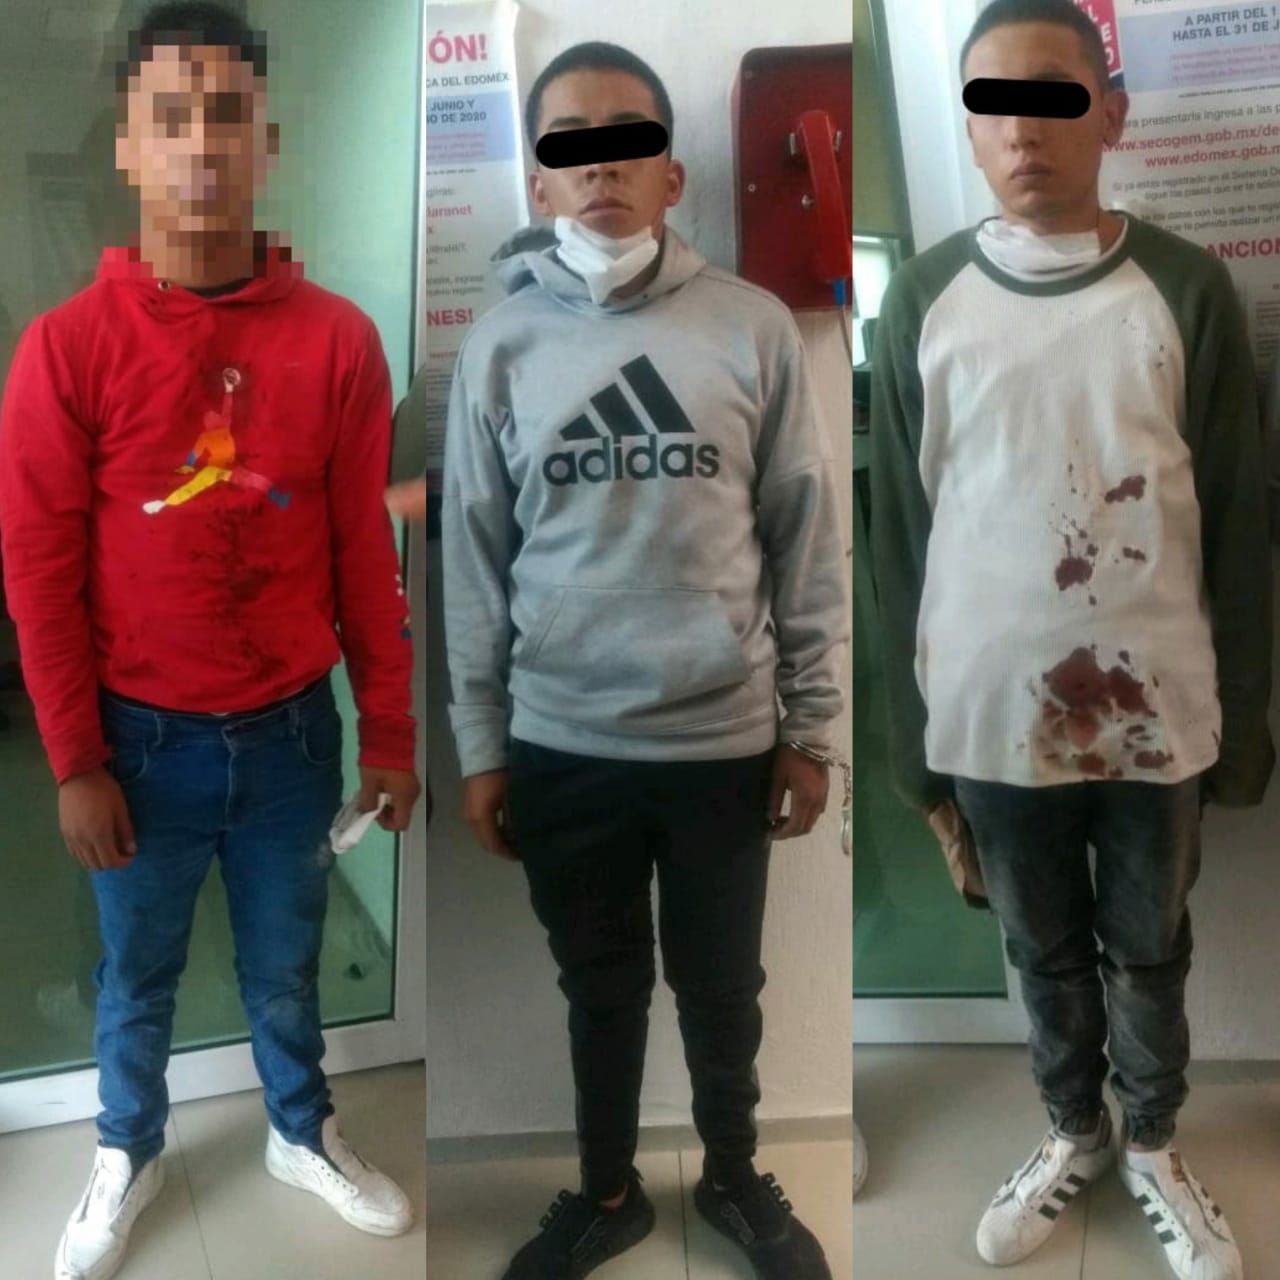 Policias de Ecatepec #capturan a 3 jóvenes que aparecen en videos #asaltando a bordo de una motocicleta